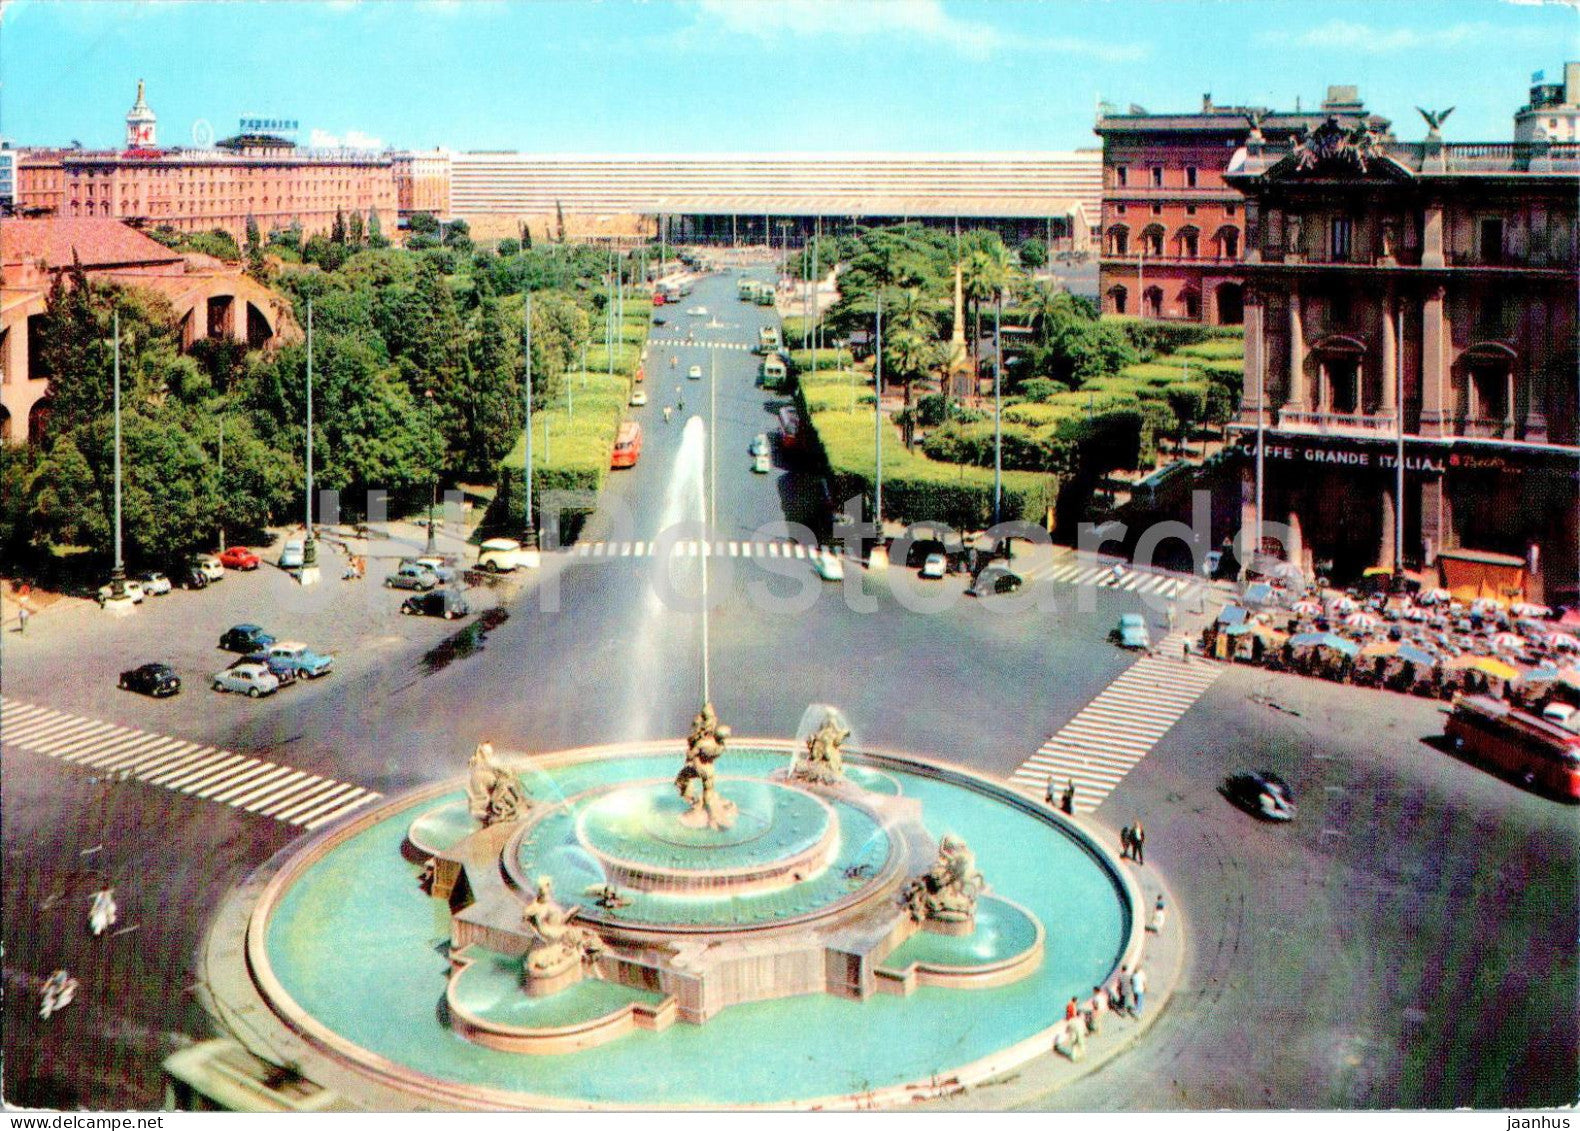 Roma - Rome - Piazza della Repubblica - Stazione Termini - Republic square - Railway Station - 28324 - Italy - unused - JH Postcards